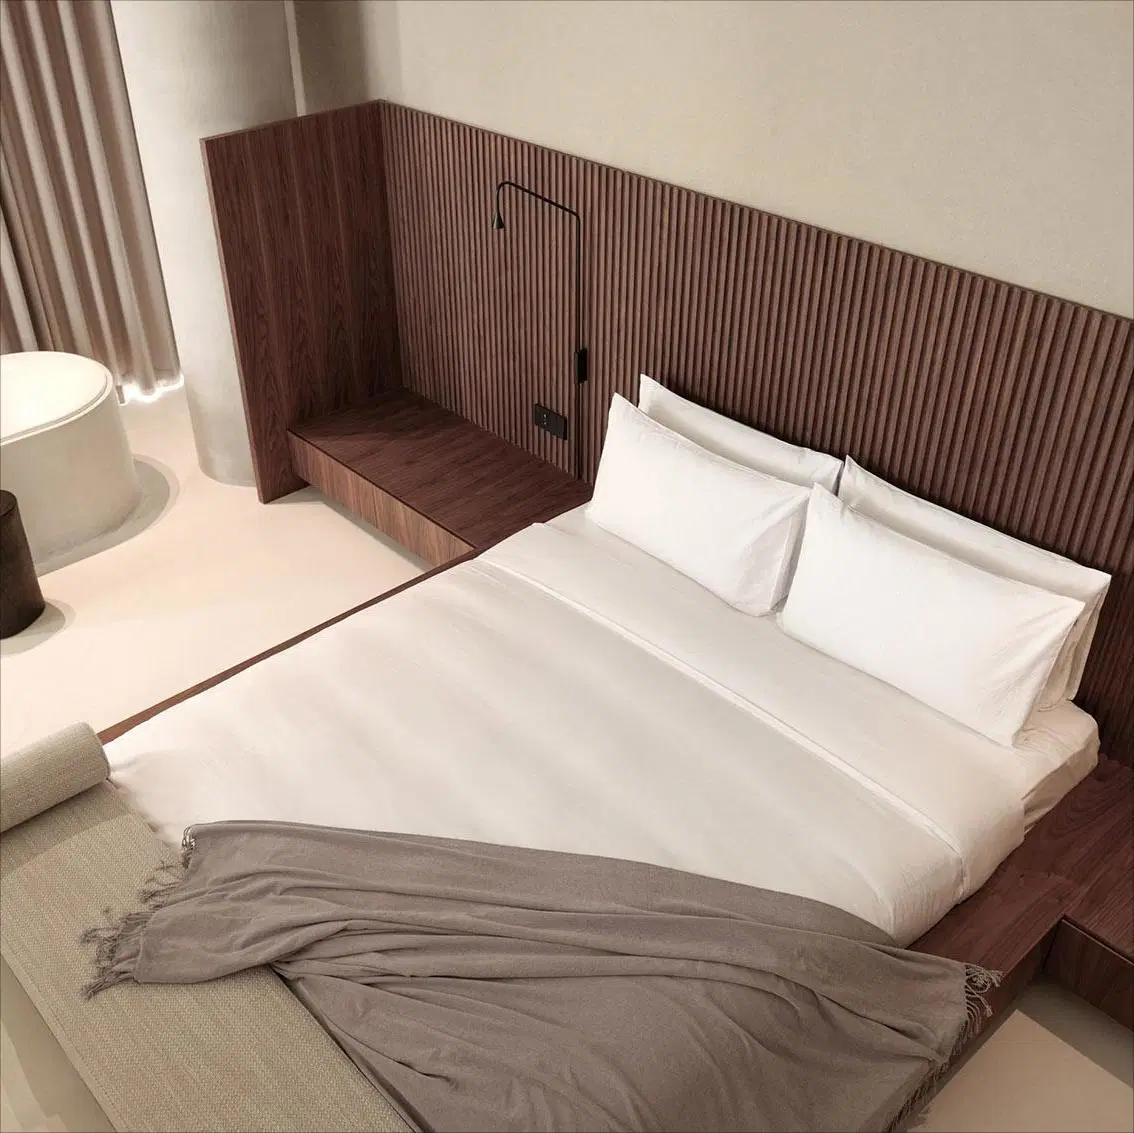 Precio competitivo Hotel moderno dormitorio hermoso mobiliario conjunto de camas